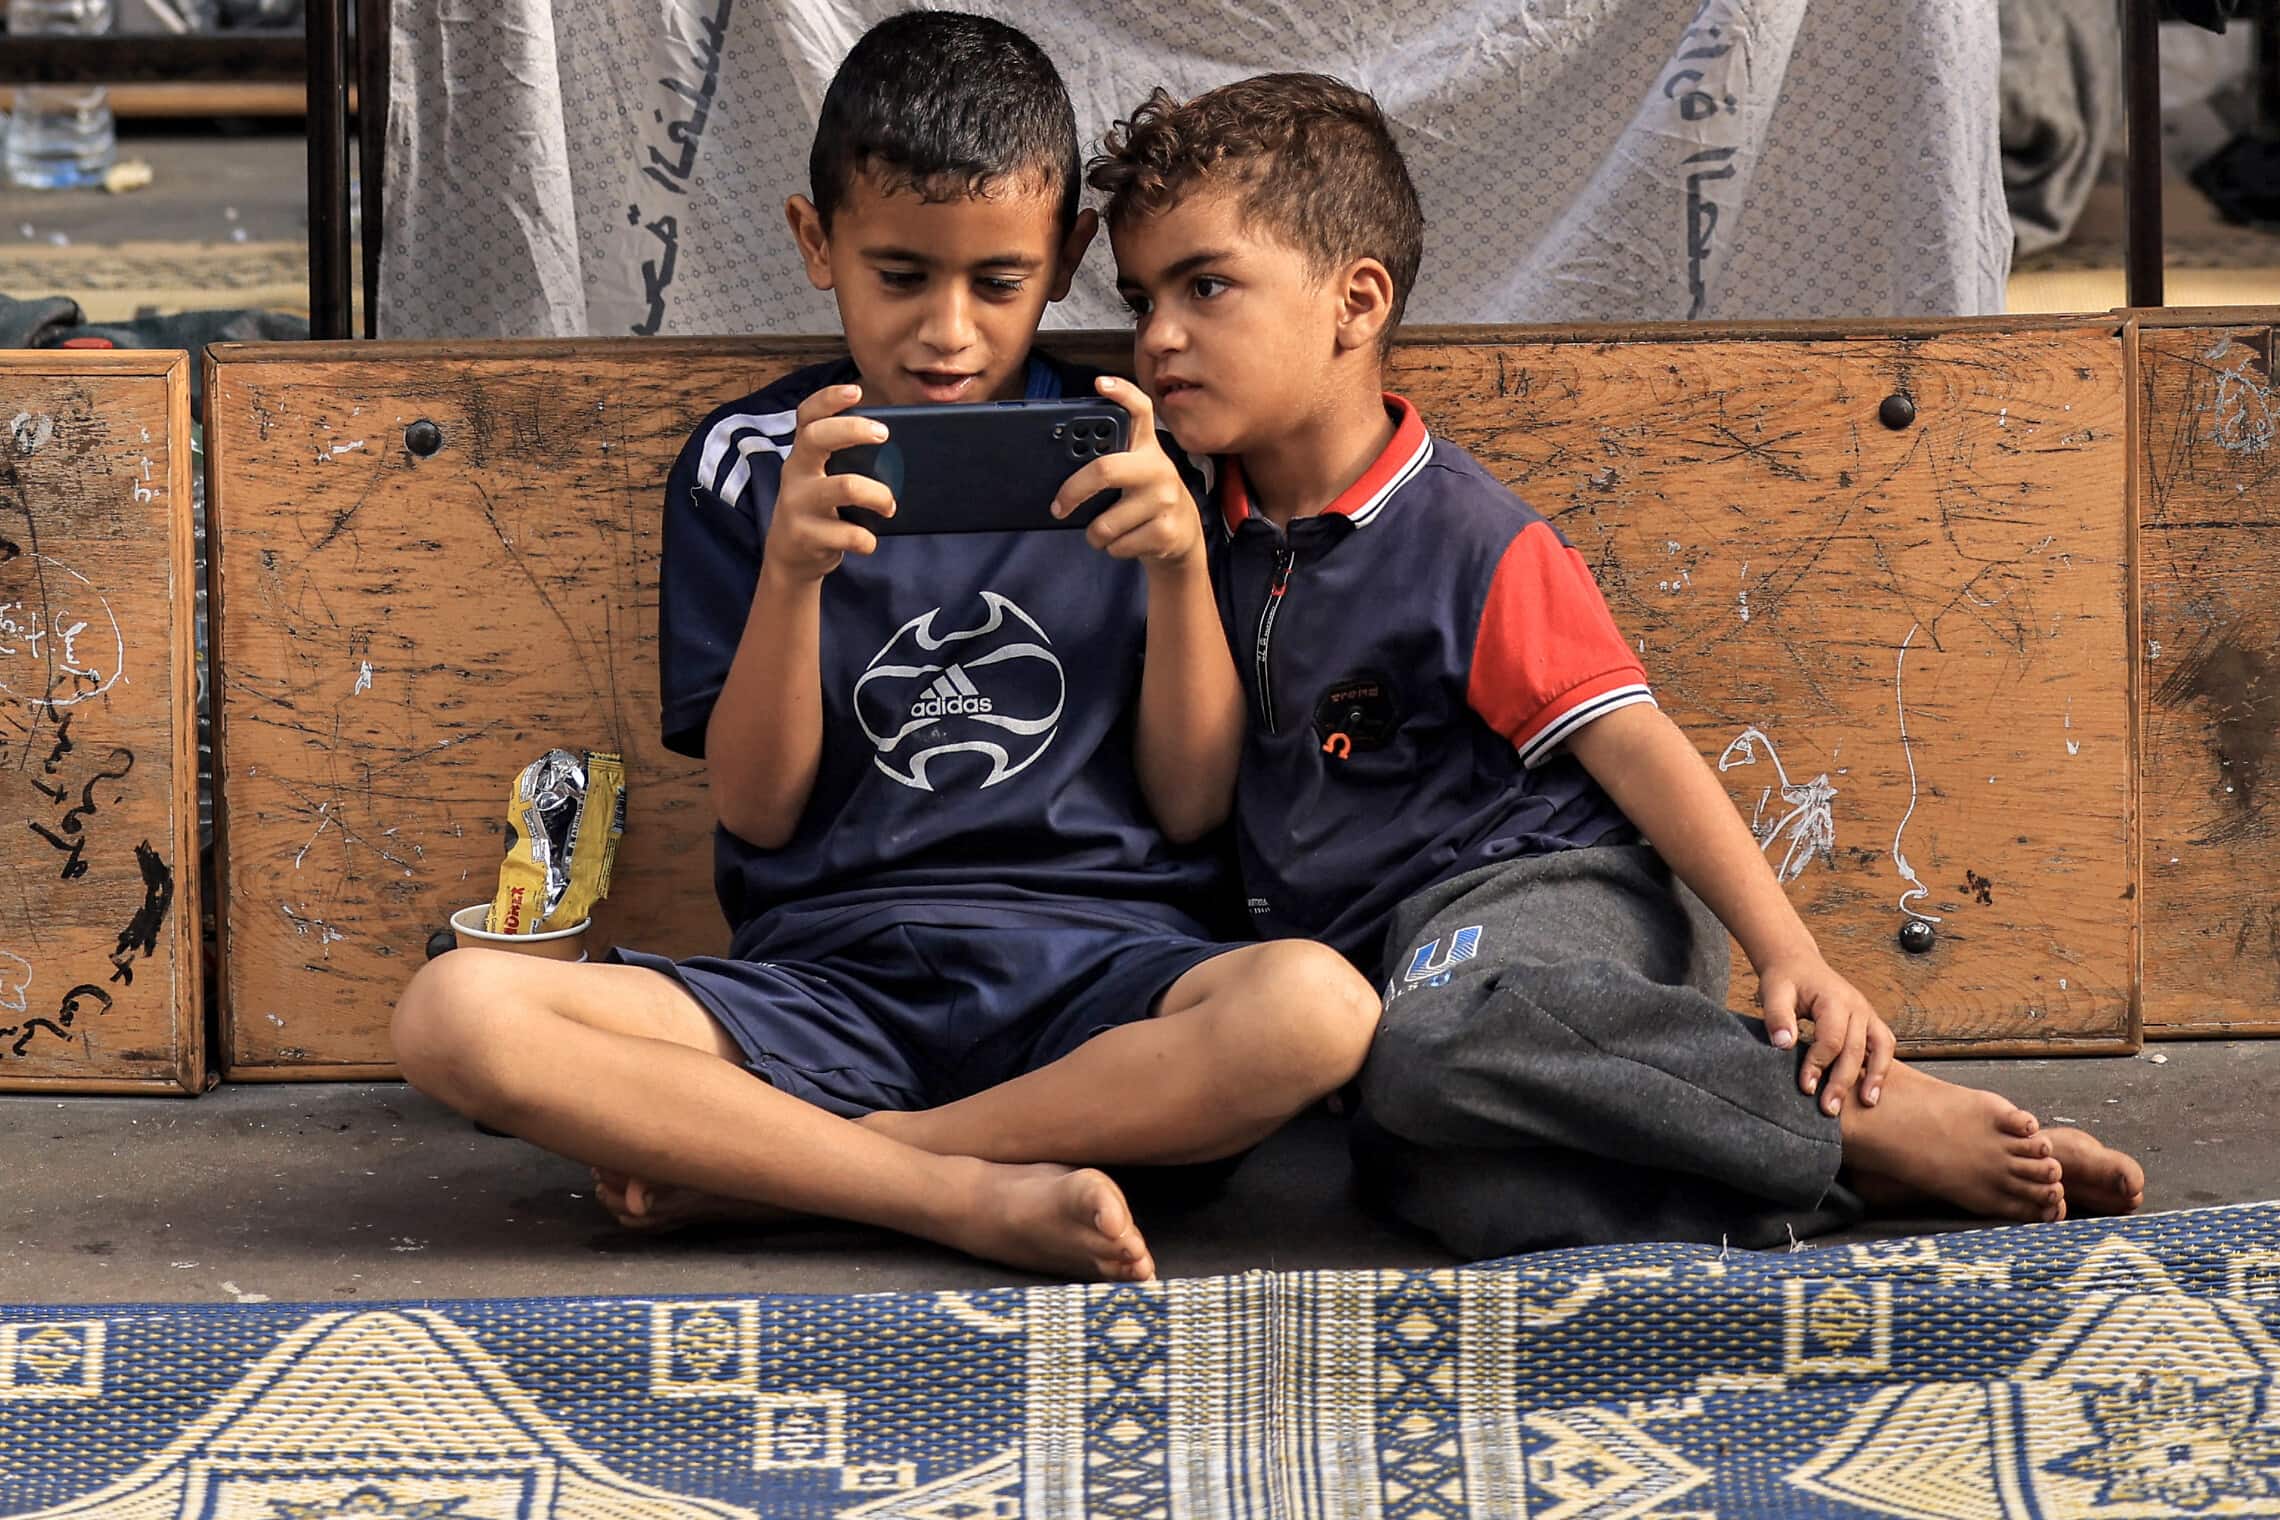 ילדים פלסטינים משחקים בטלפון הסלולרי בחאן יונס, 25 באוקוטבר 2023 (צילום: MAHMUD HAMS / AFP)